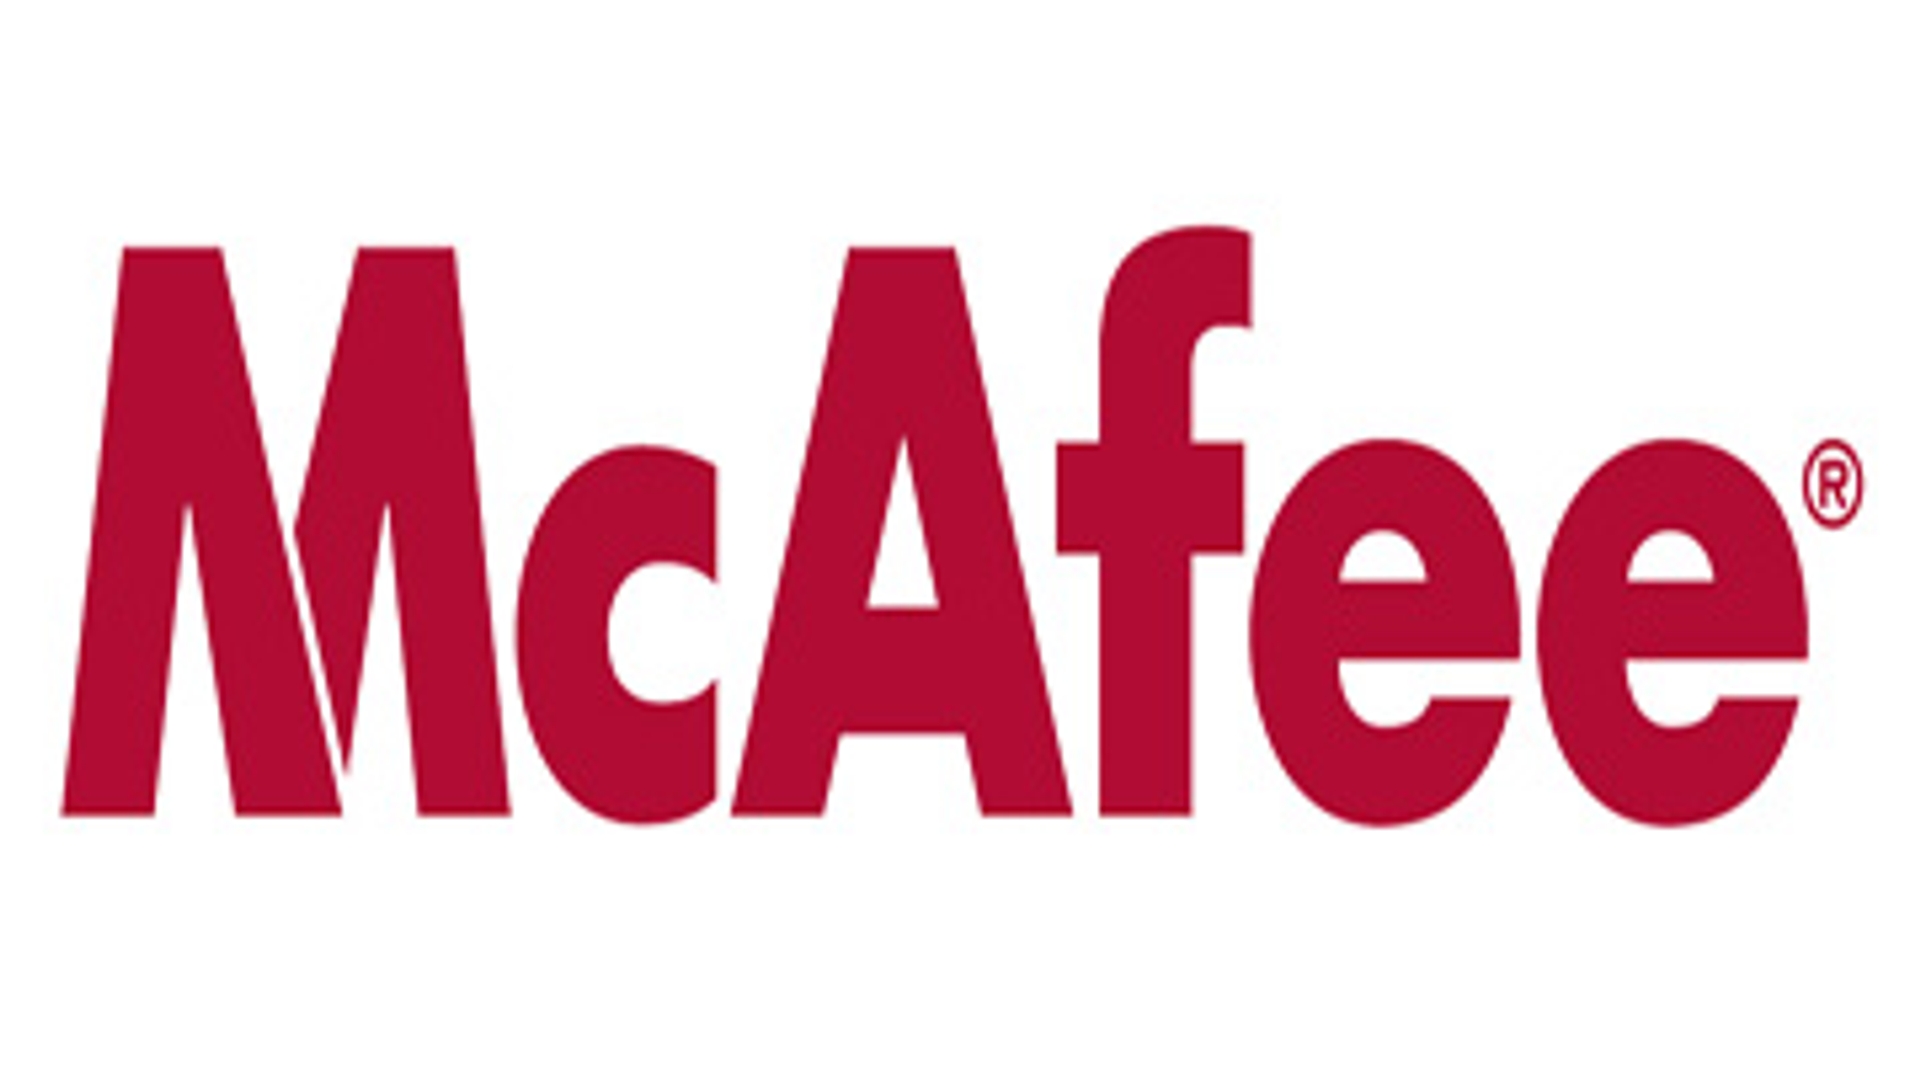 mcafee_logo-groot.jpg